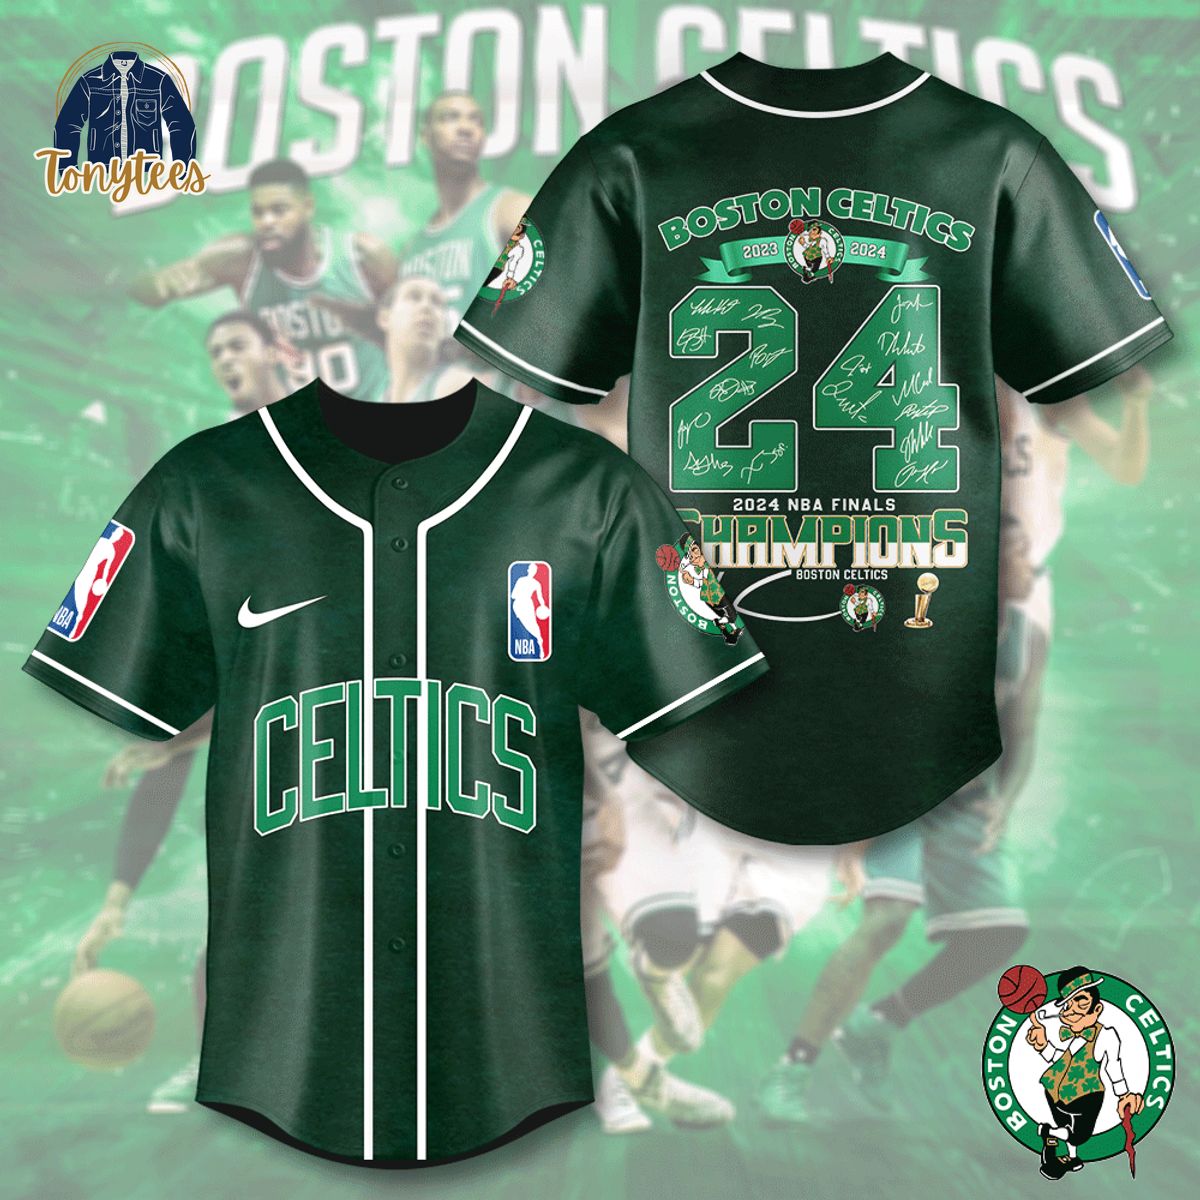 Boston Celtics 2024 NBA Finals Champions Baseball Jersey